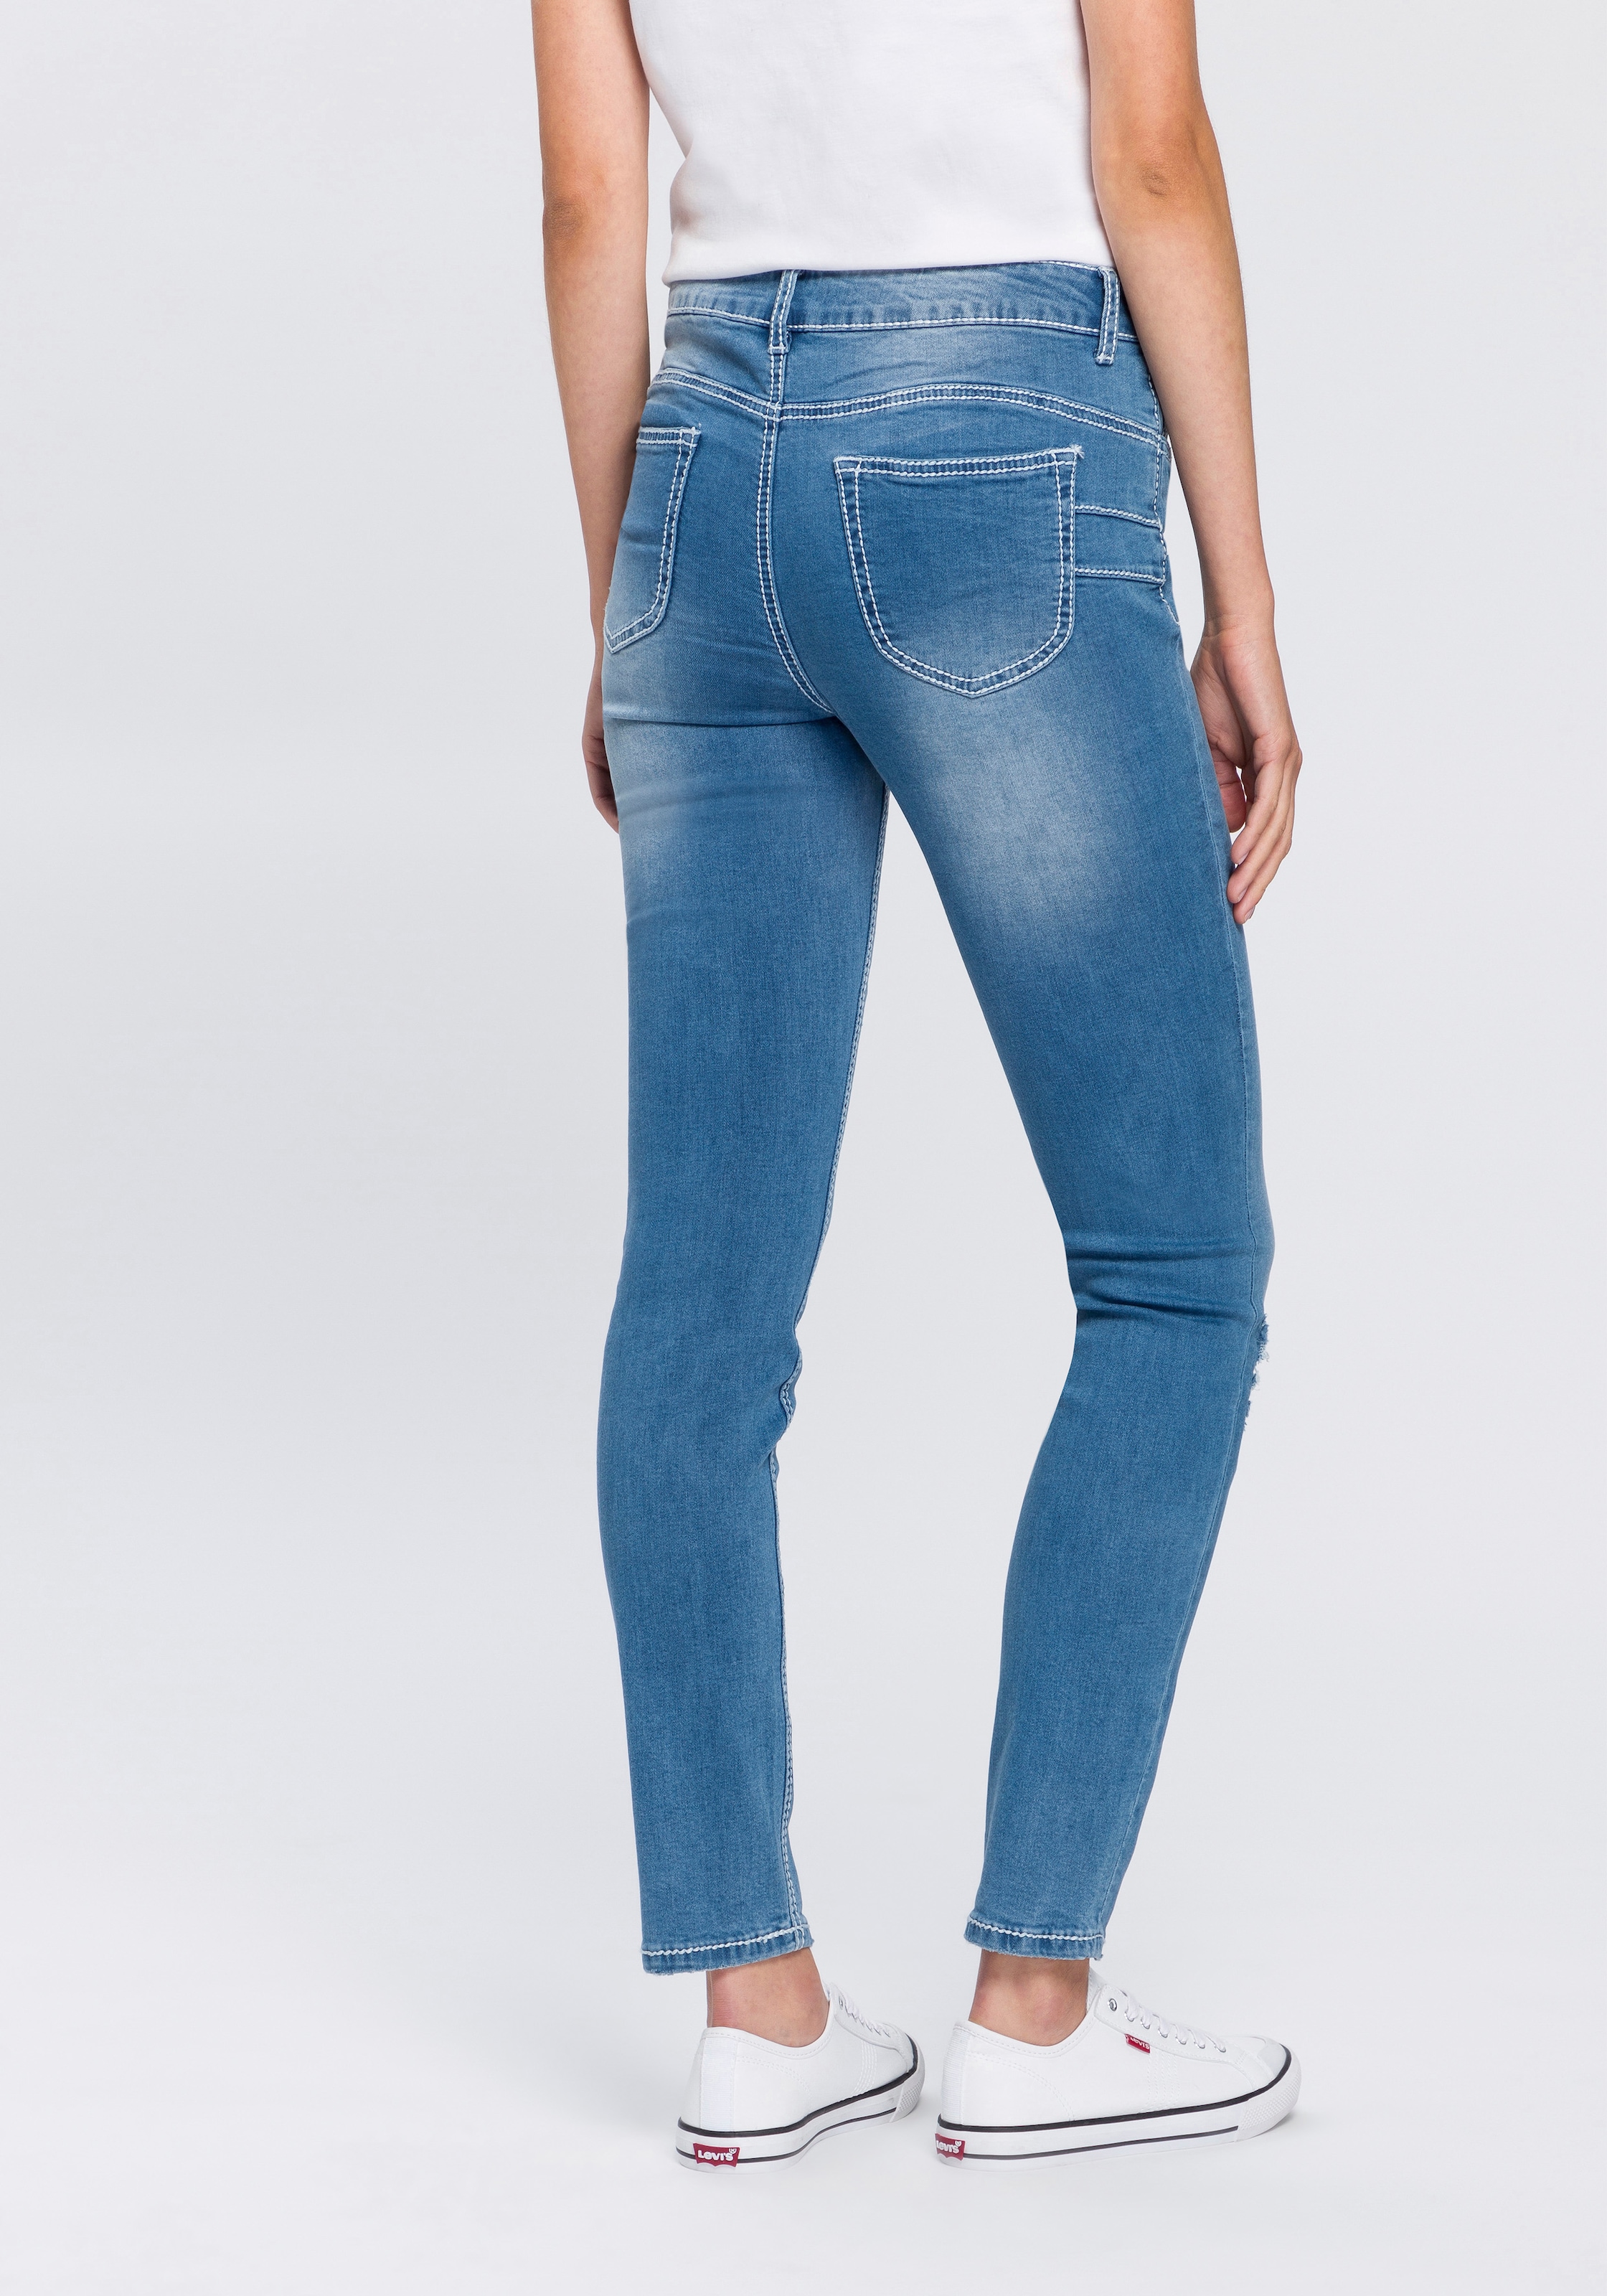 Knopfleiste«, Trouver Arizona Waist sur sichtbarer, Slim-fit-Jeans »mit Mid schräger